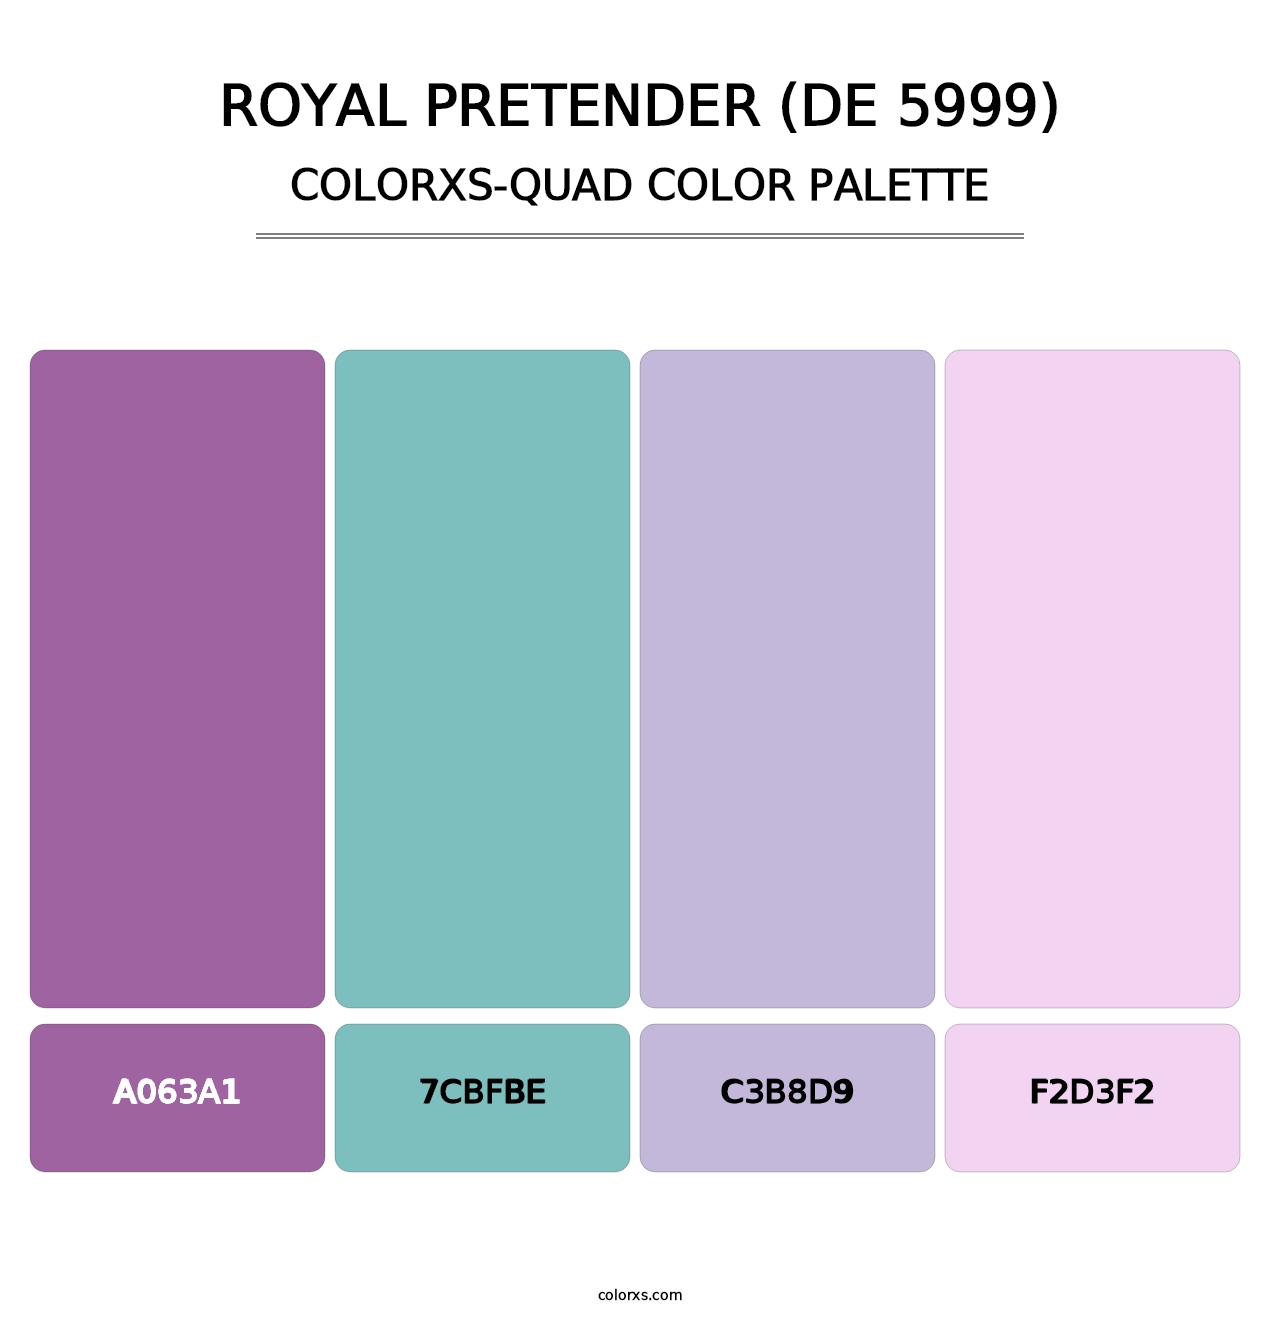 Royal Pretender (DE 5999) - Colorxs Quad Palette